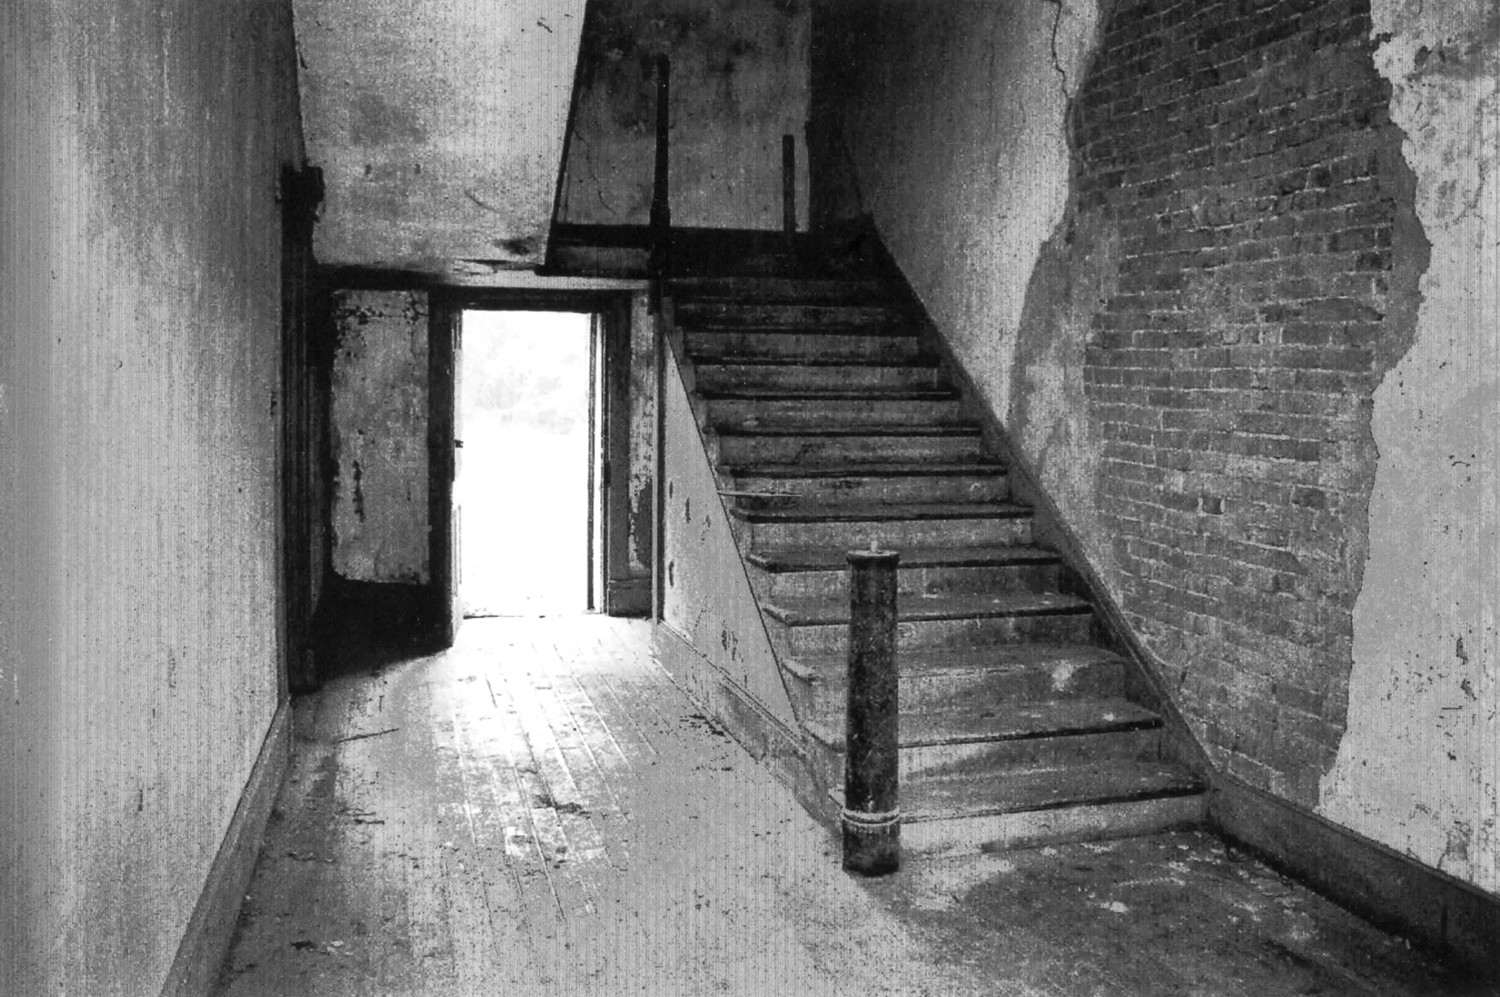 Barleywood, Charles Town West Virginia Entrance Hall Stair (2006)